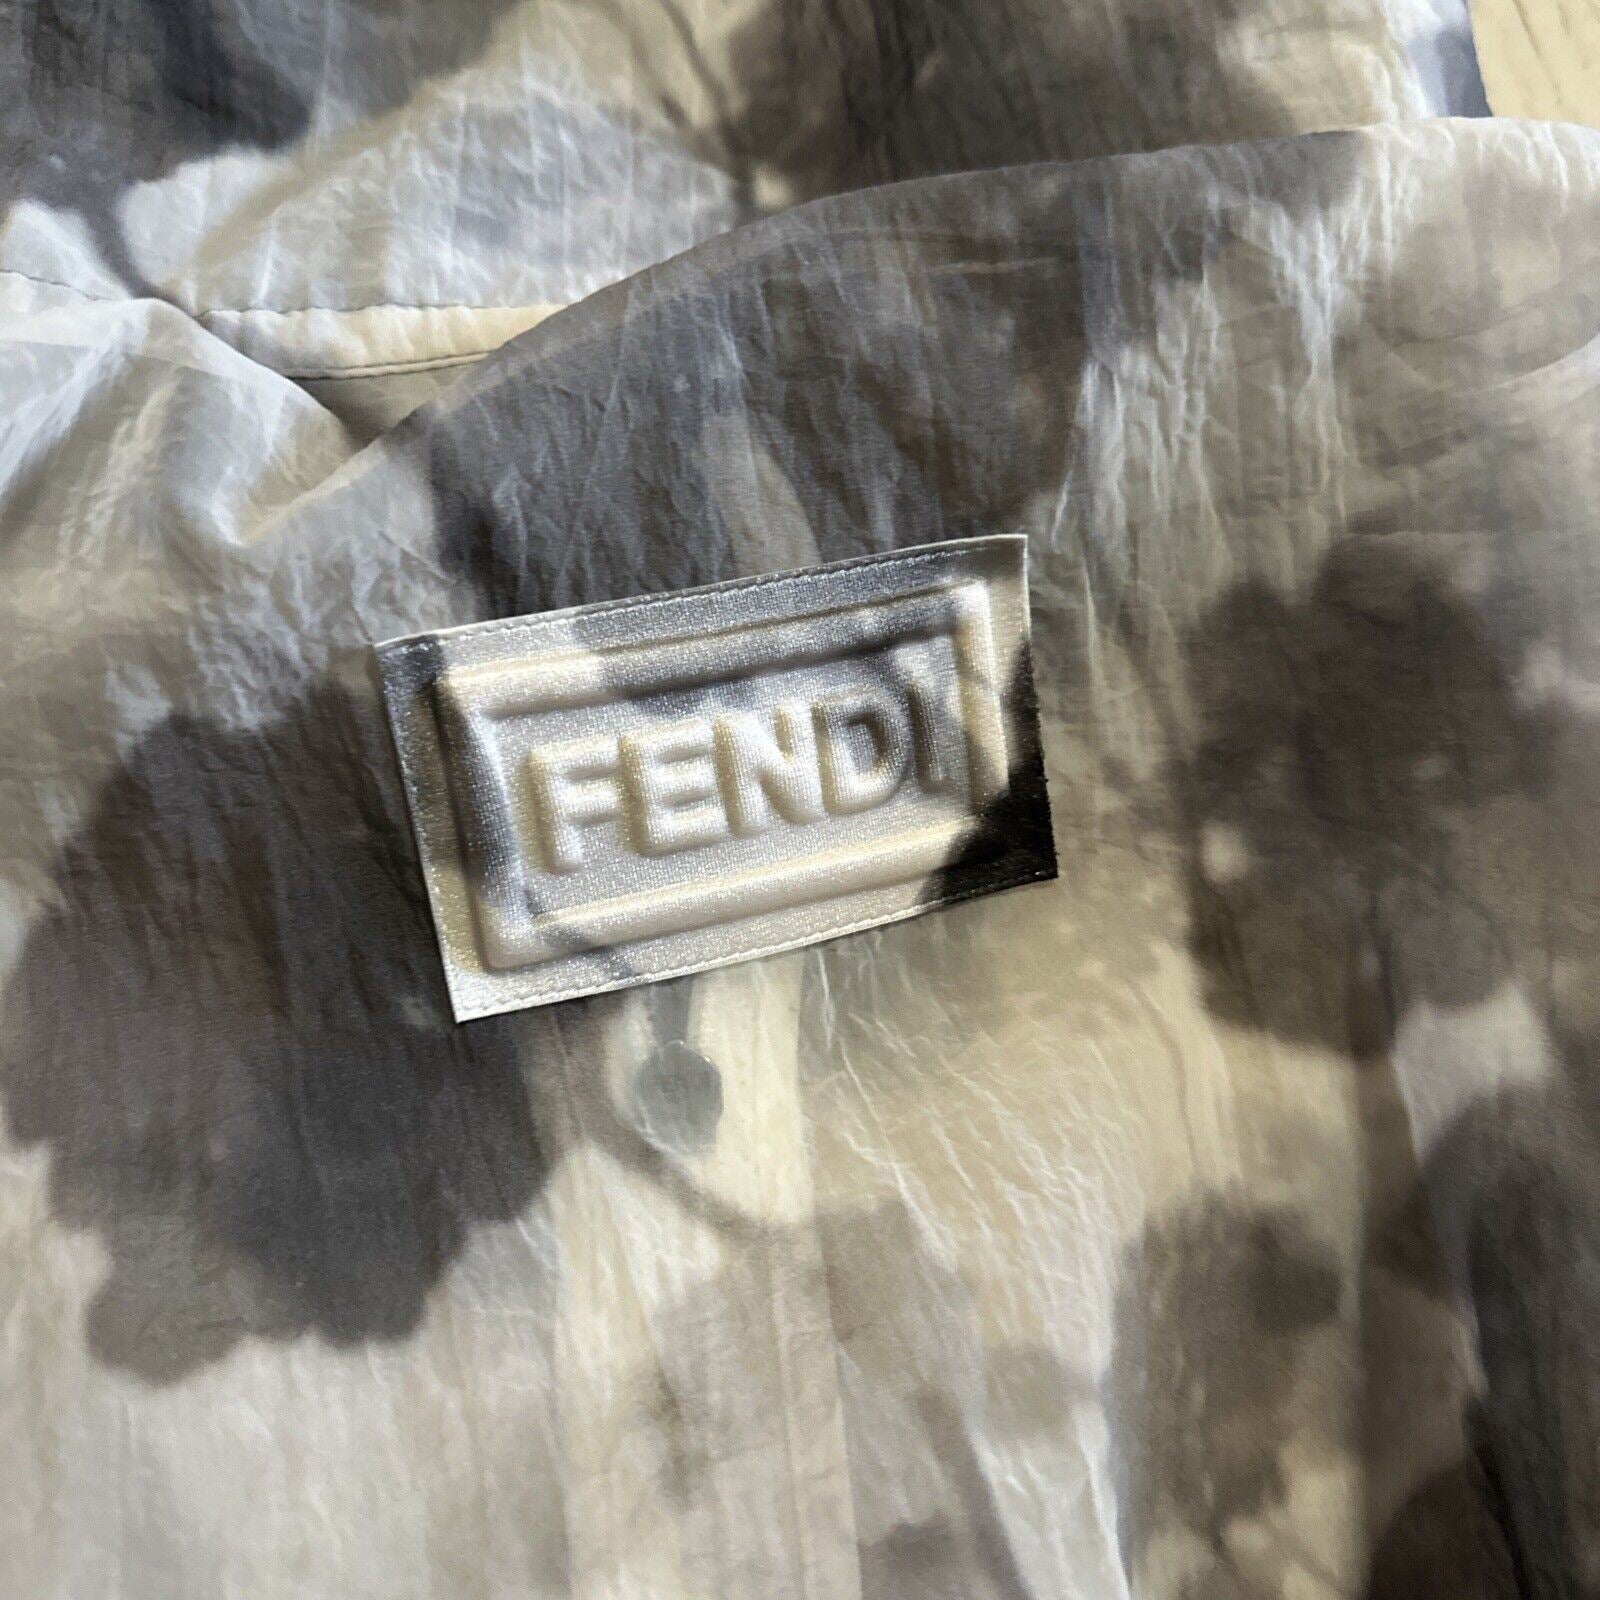 Новая женская парка Fendi цвета Shady Flowers Tech, серая/белая, размер M, Италия, $2550